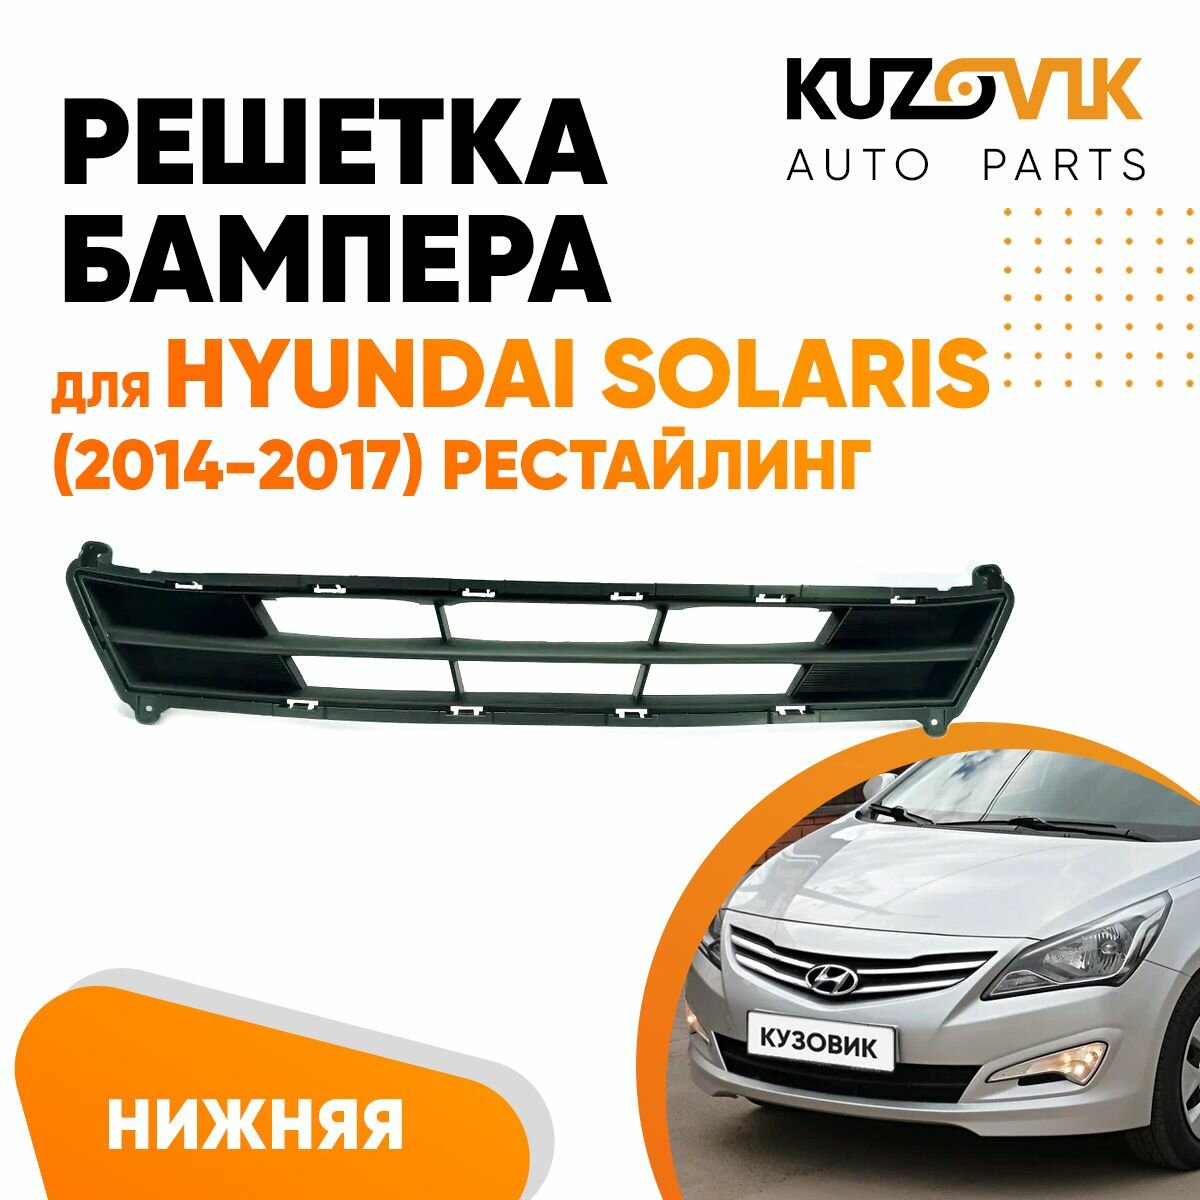 Решетка бампера нижняя Hyundai Solaris (2014-2017) рестайлинг